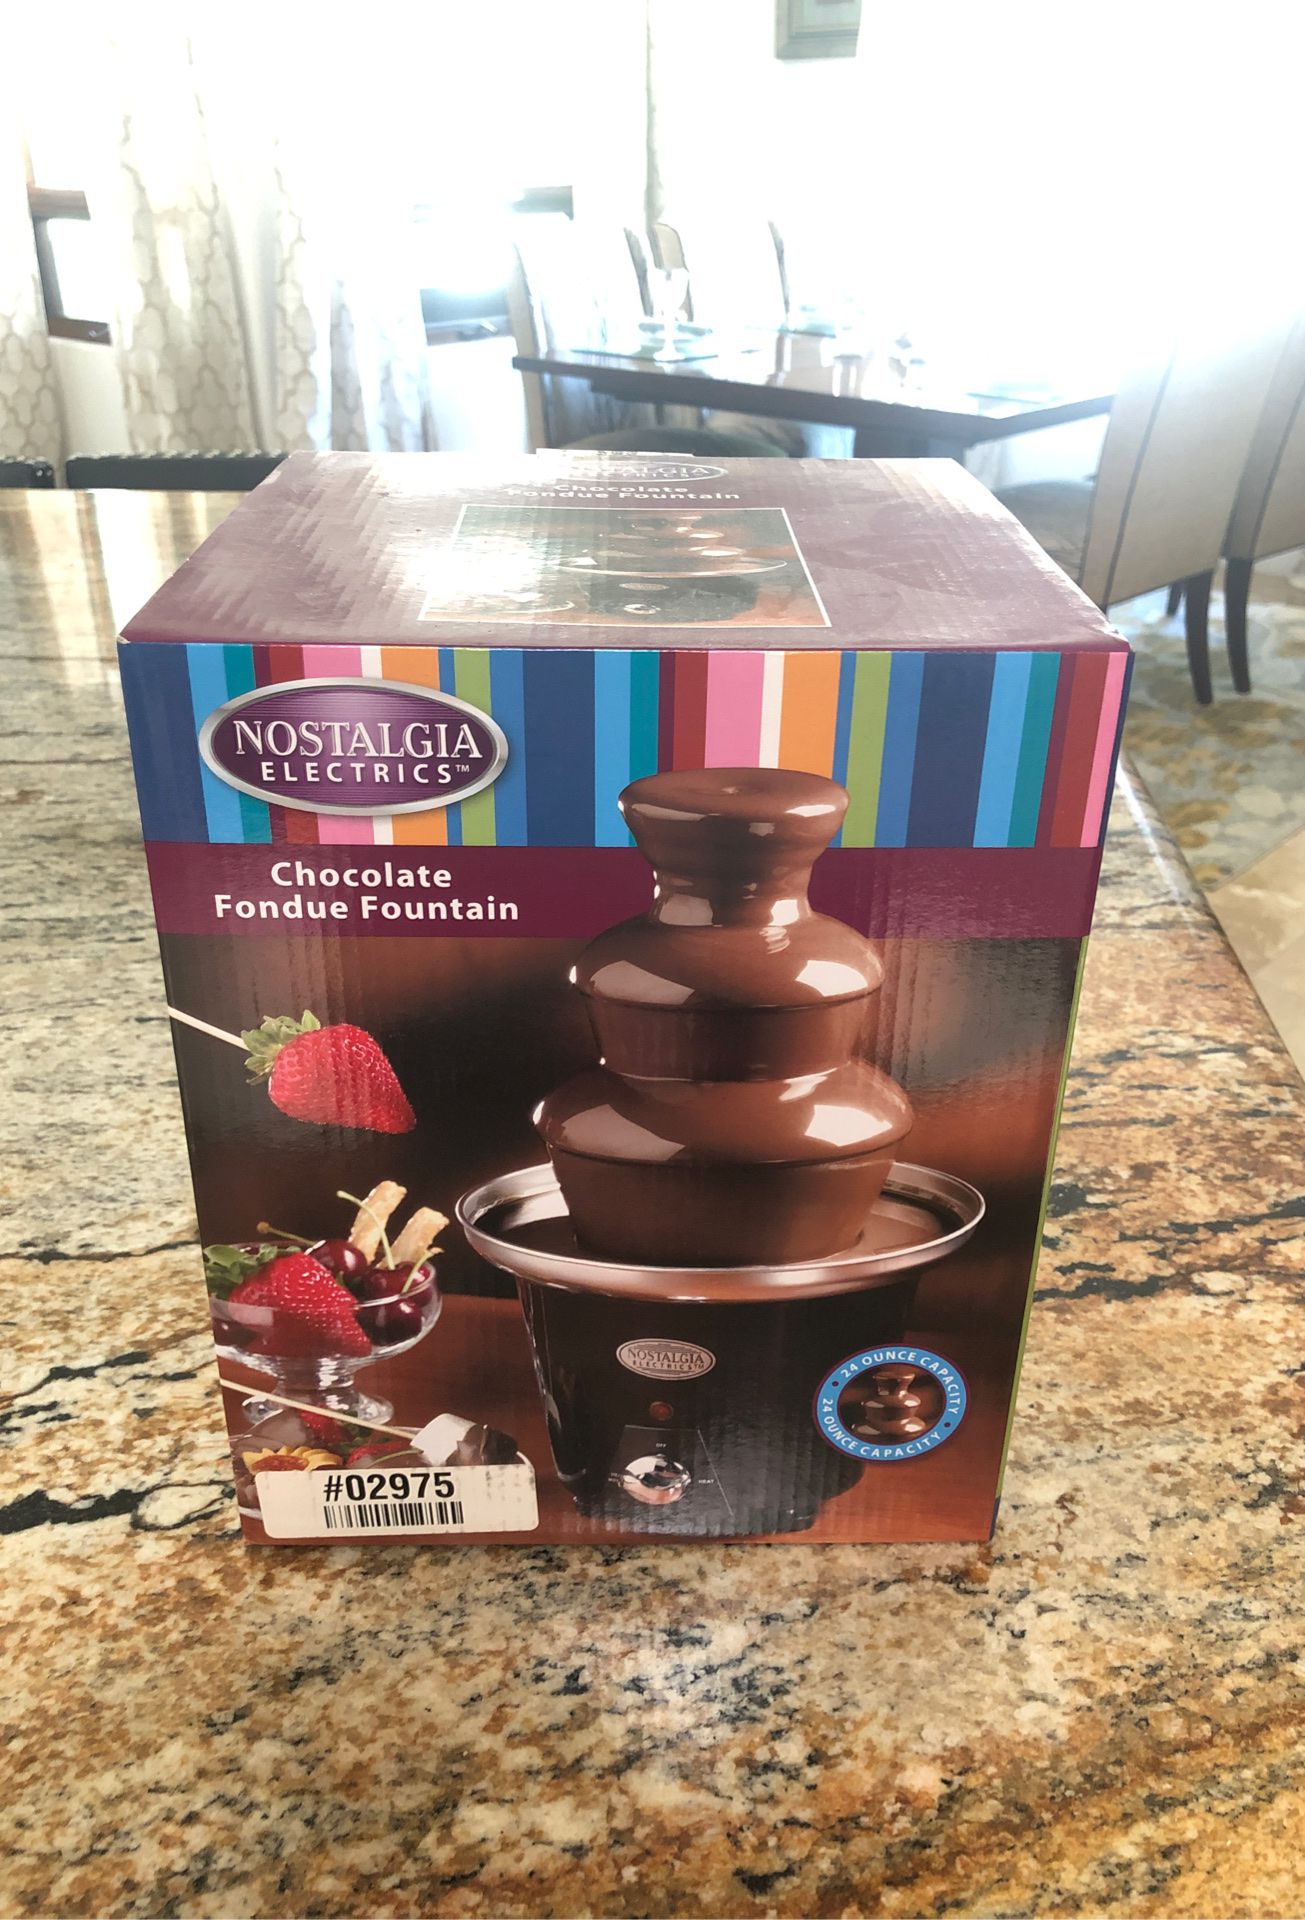 Brand new chocolate fondue